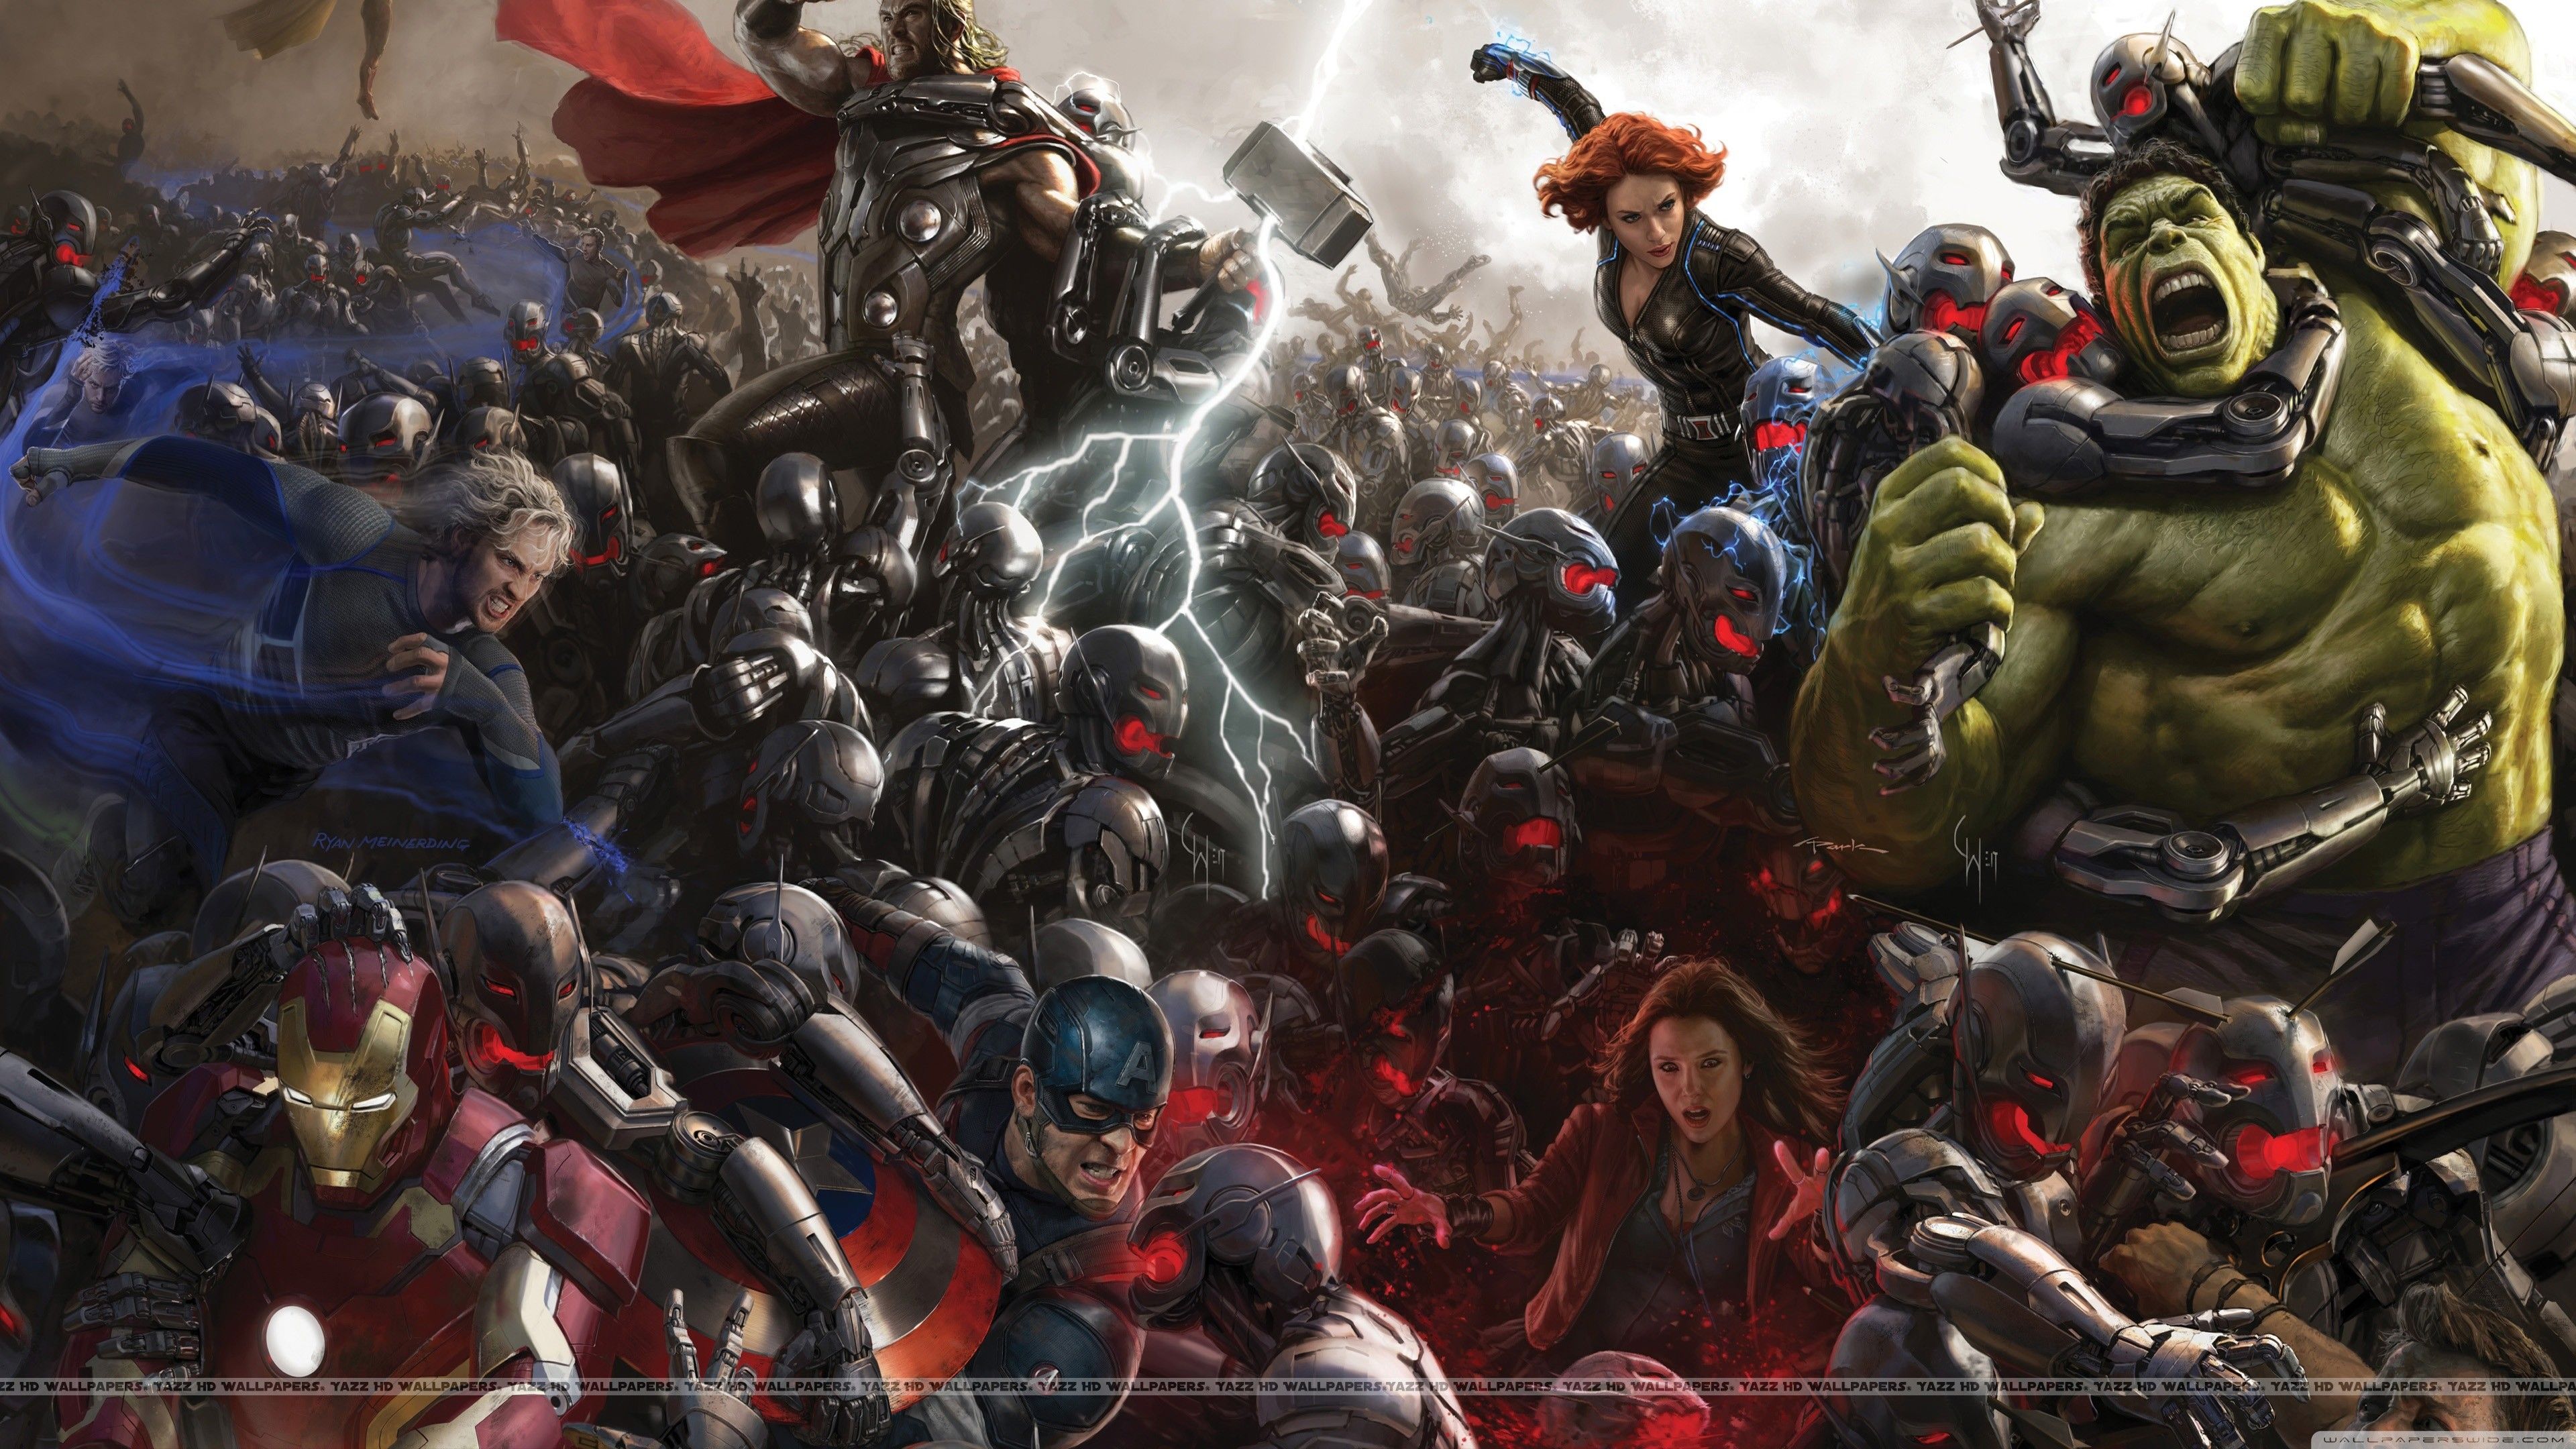 Một hình nền Marvel 4K là một món quà tuyệt vời dành cho các fan của vũ trụ siêu anh hùng Marvel. Với độ phân giải cao, màu sắc sống động và kỹ thuật đồ họa chuyên nghiệp, bạn sẽ được đắm mình trong thế giới đầy màu sắc và huyền bí của các siêu anh hùng. Cứ bấm vào để xem và cảm nhận sự khác biệt!